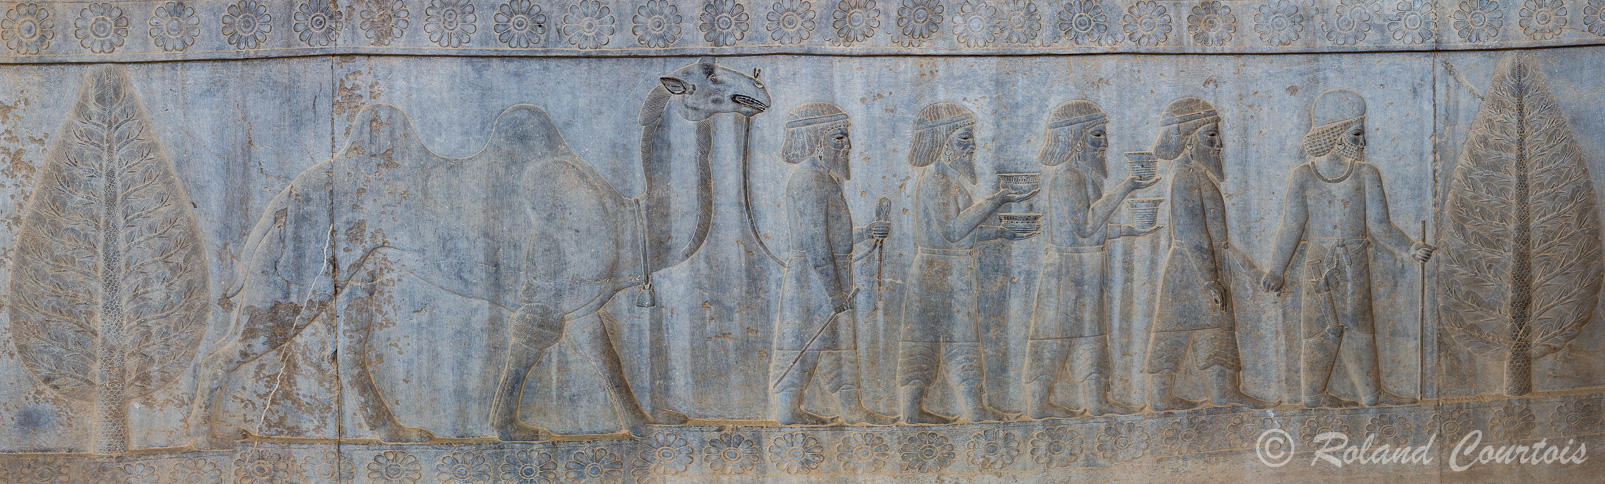 Persepolis :  Frise des Tributaires, Les Parthes, avec le chameau et ses belles dents, qui amènent de la vaisselle.